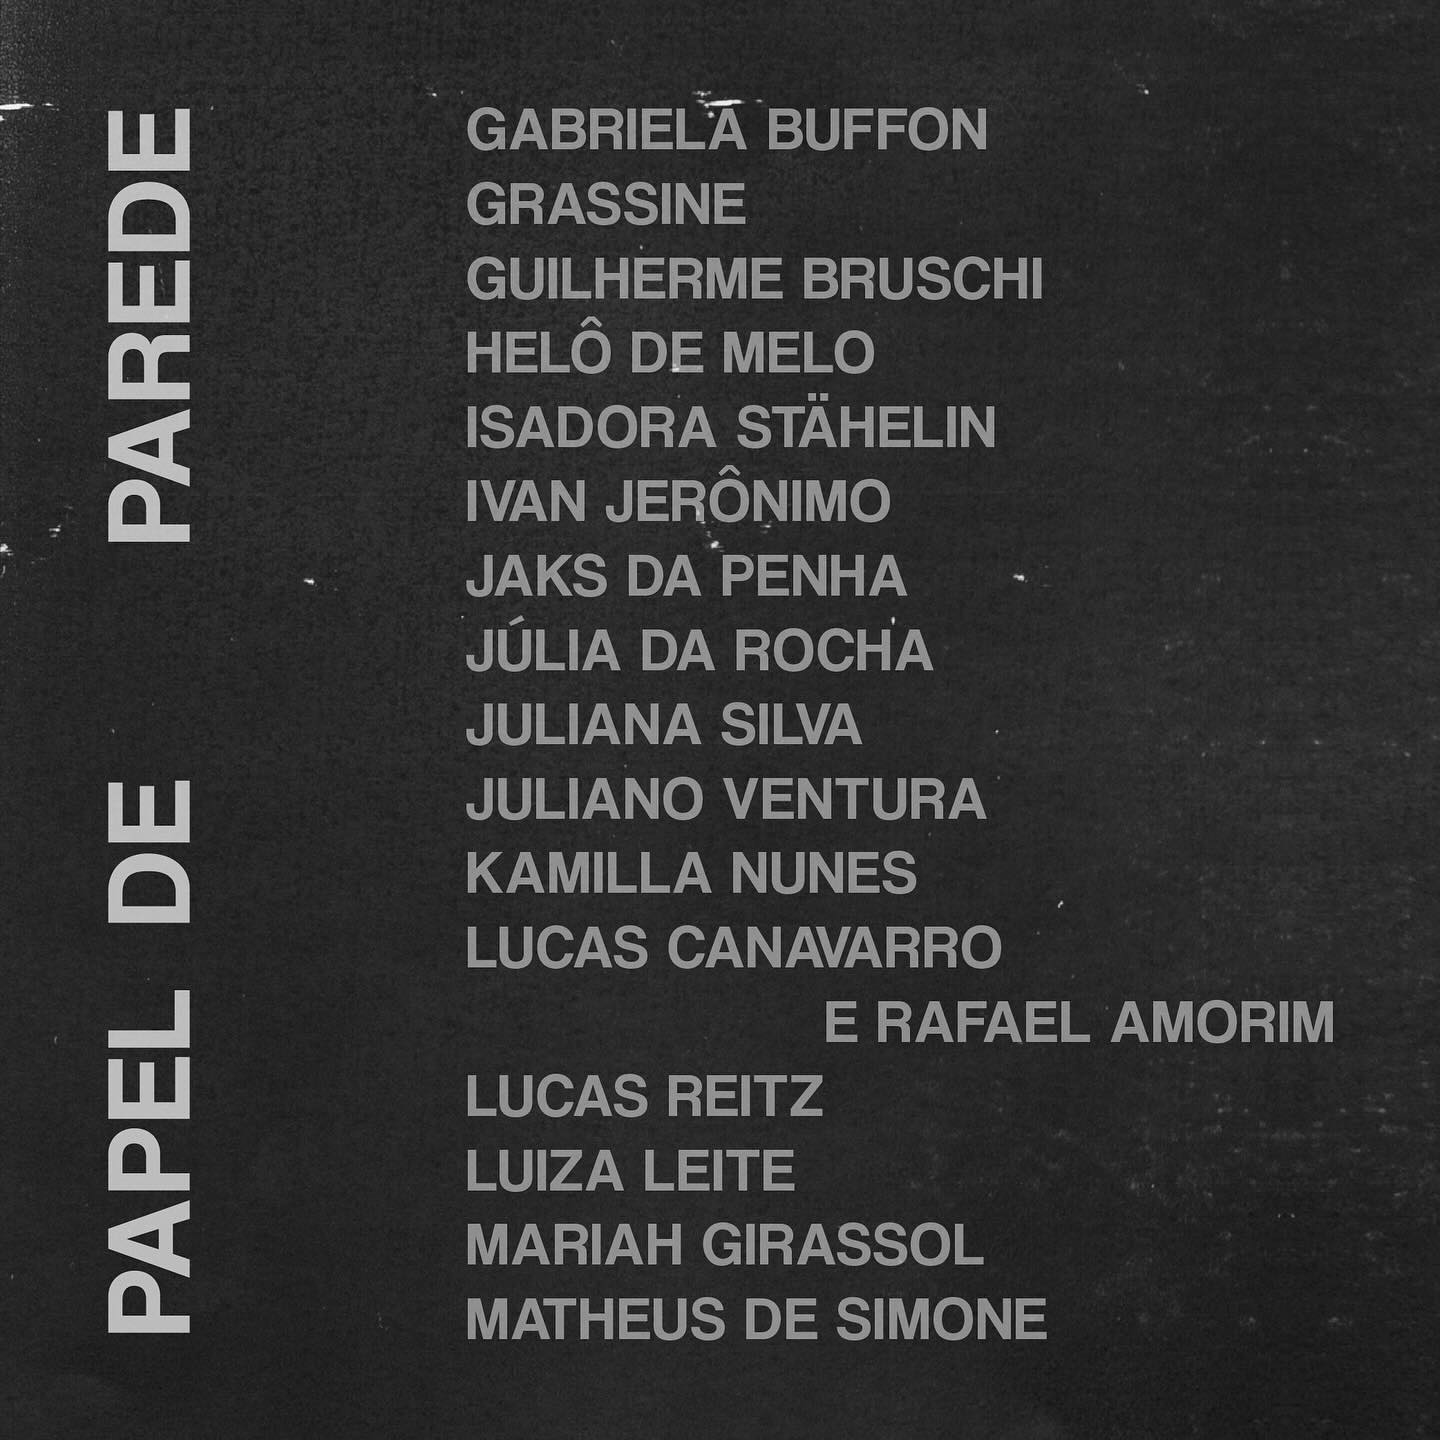 Lista parcial com os nomes dos selecionados para a Papel de Parede, com o nome “Ivan Jerônimo” entre eles